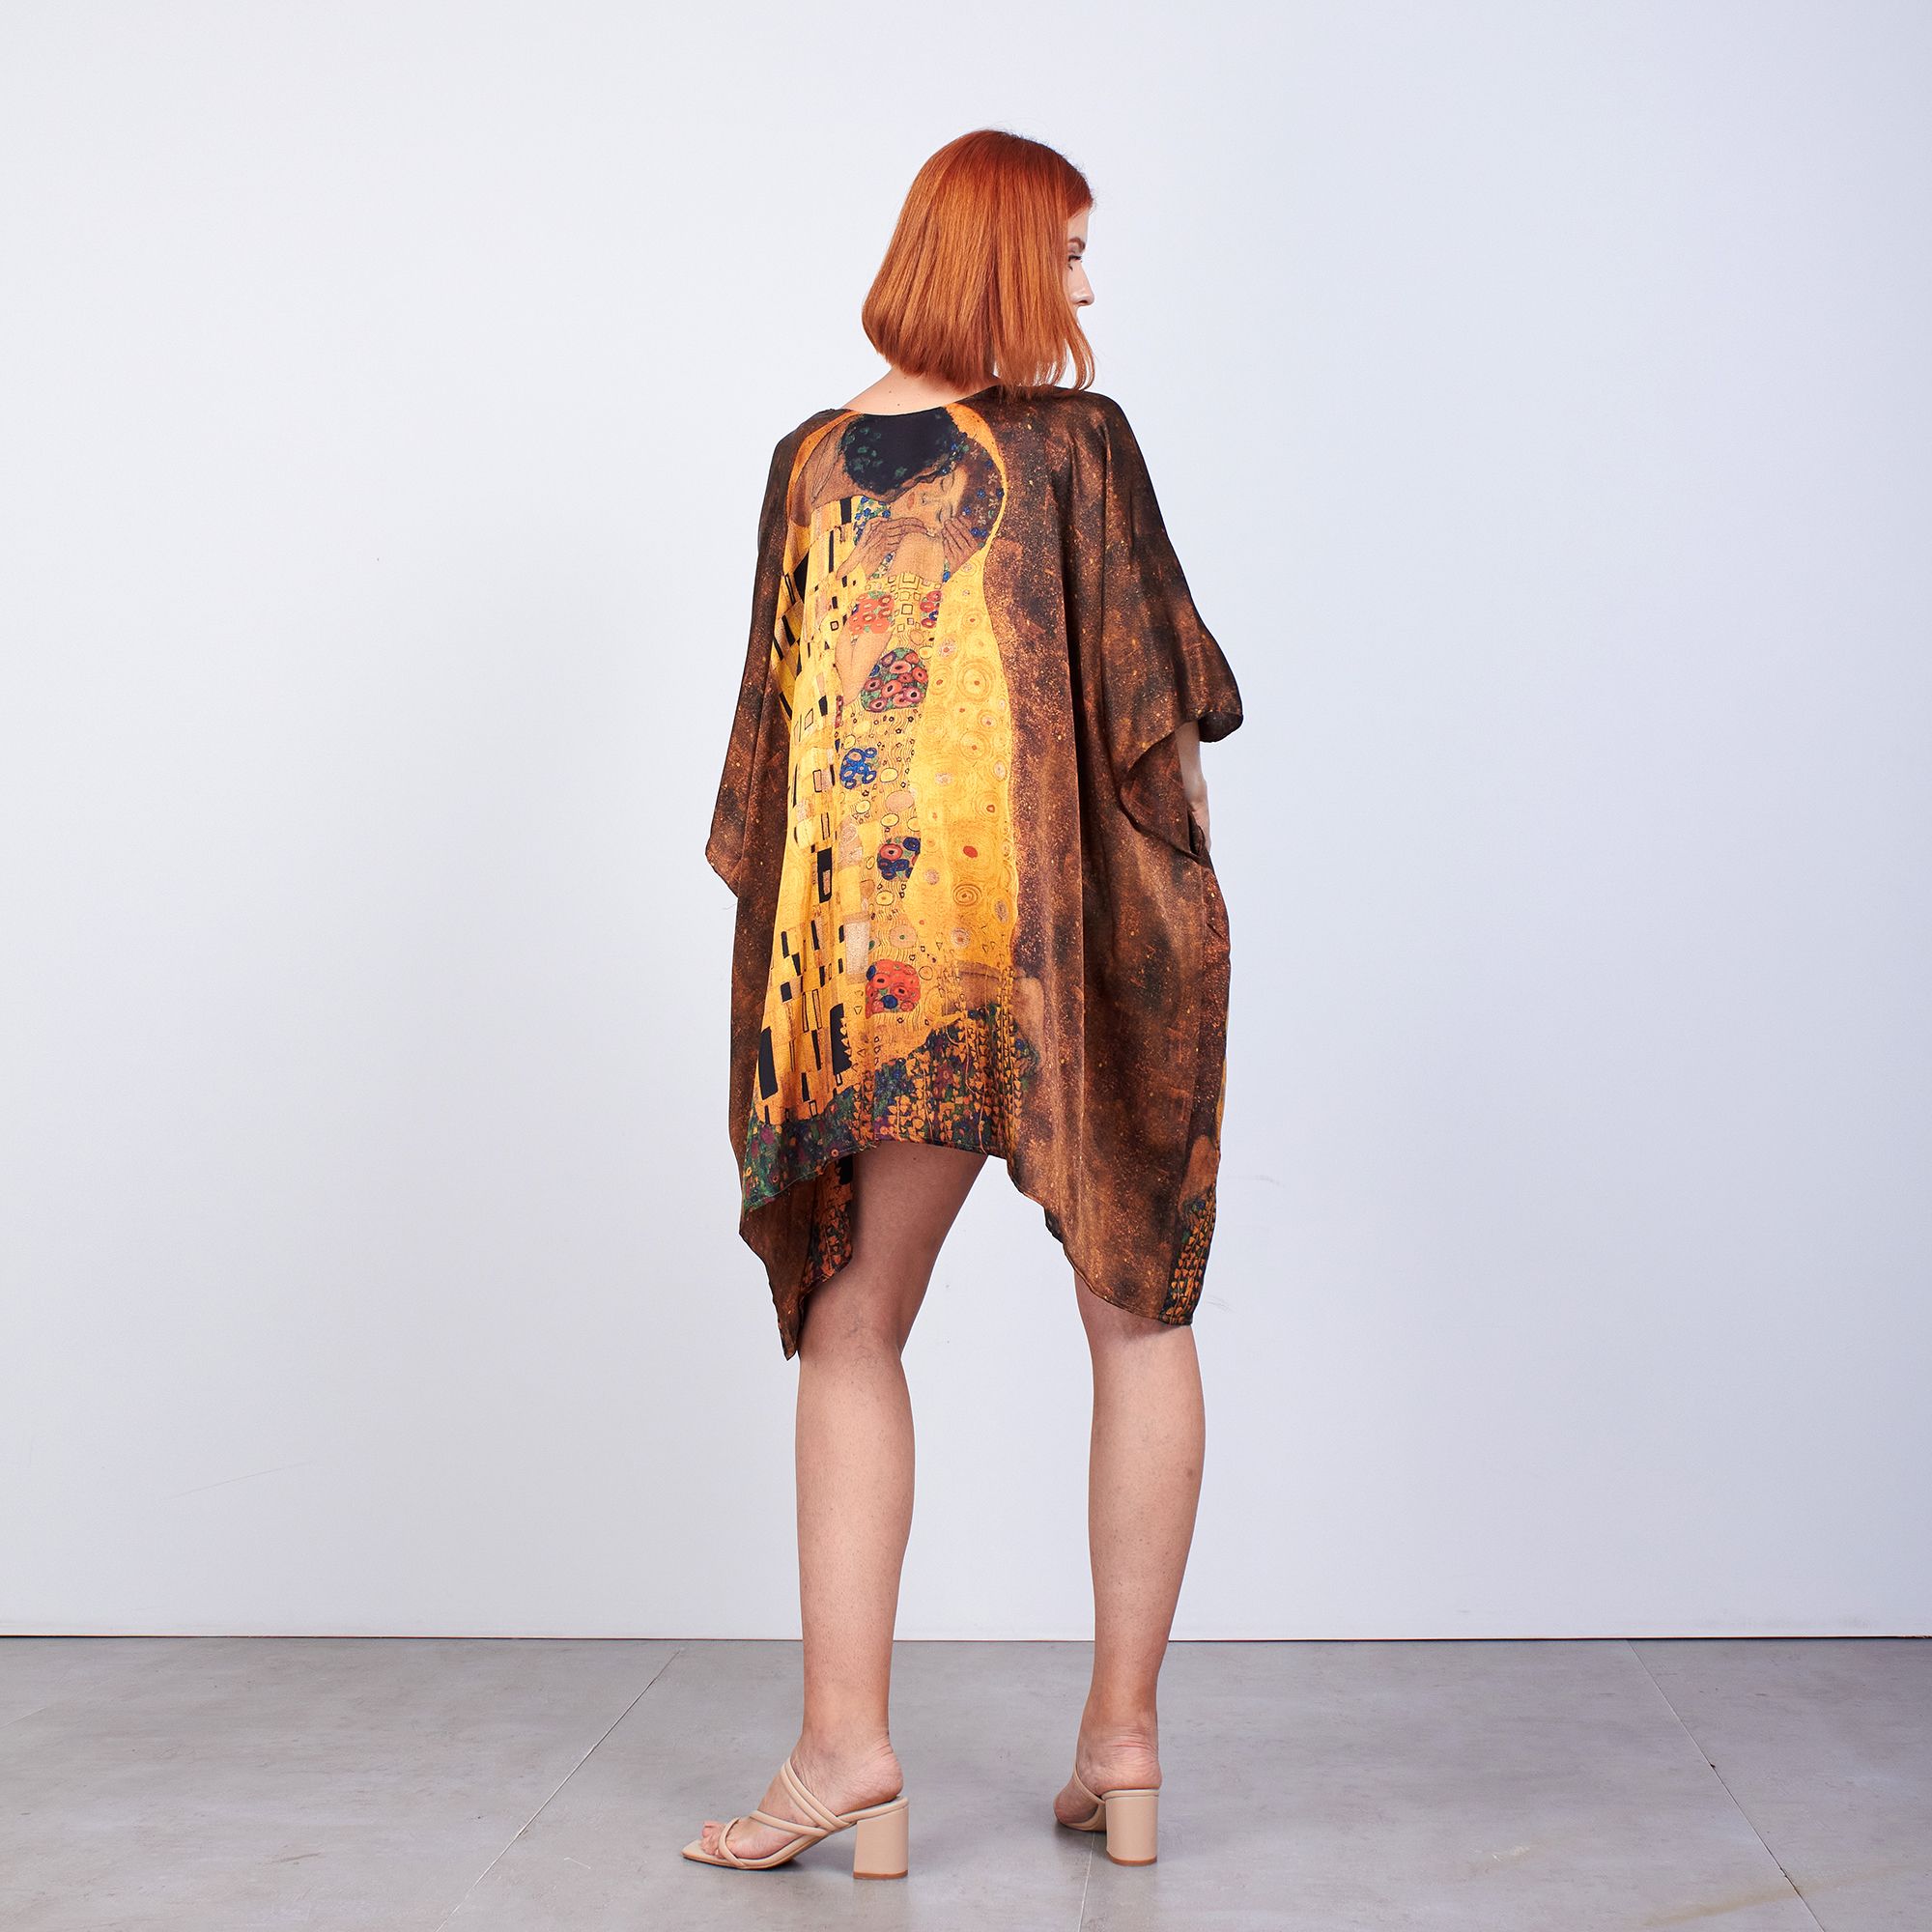 ألبسة كيمونو حريري ١٠٠٪؜ قصير "وشاح للشاطئ" | Gustav Klimt The Kiss